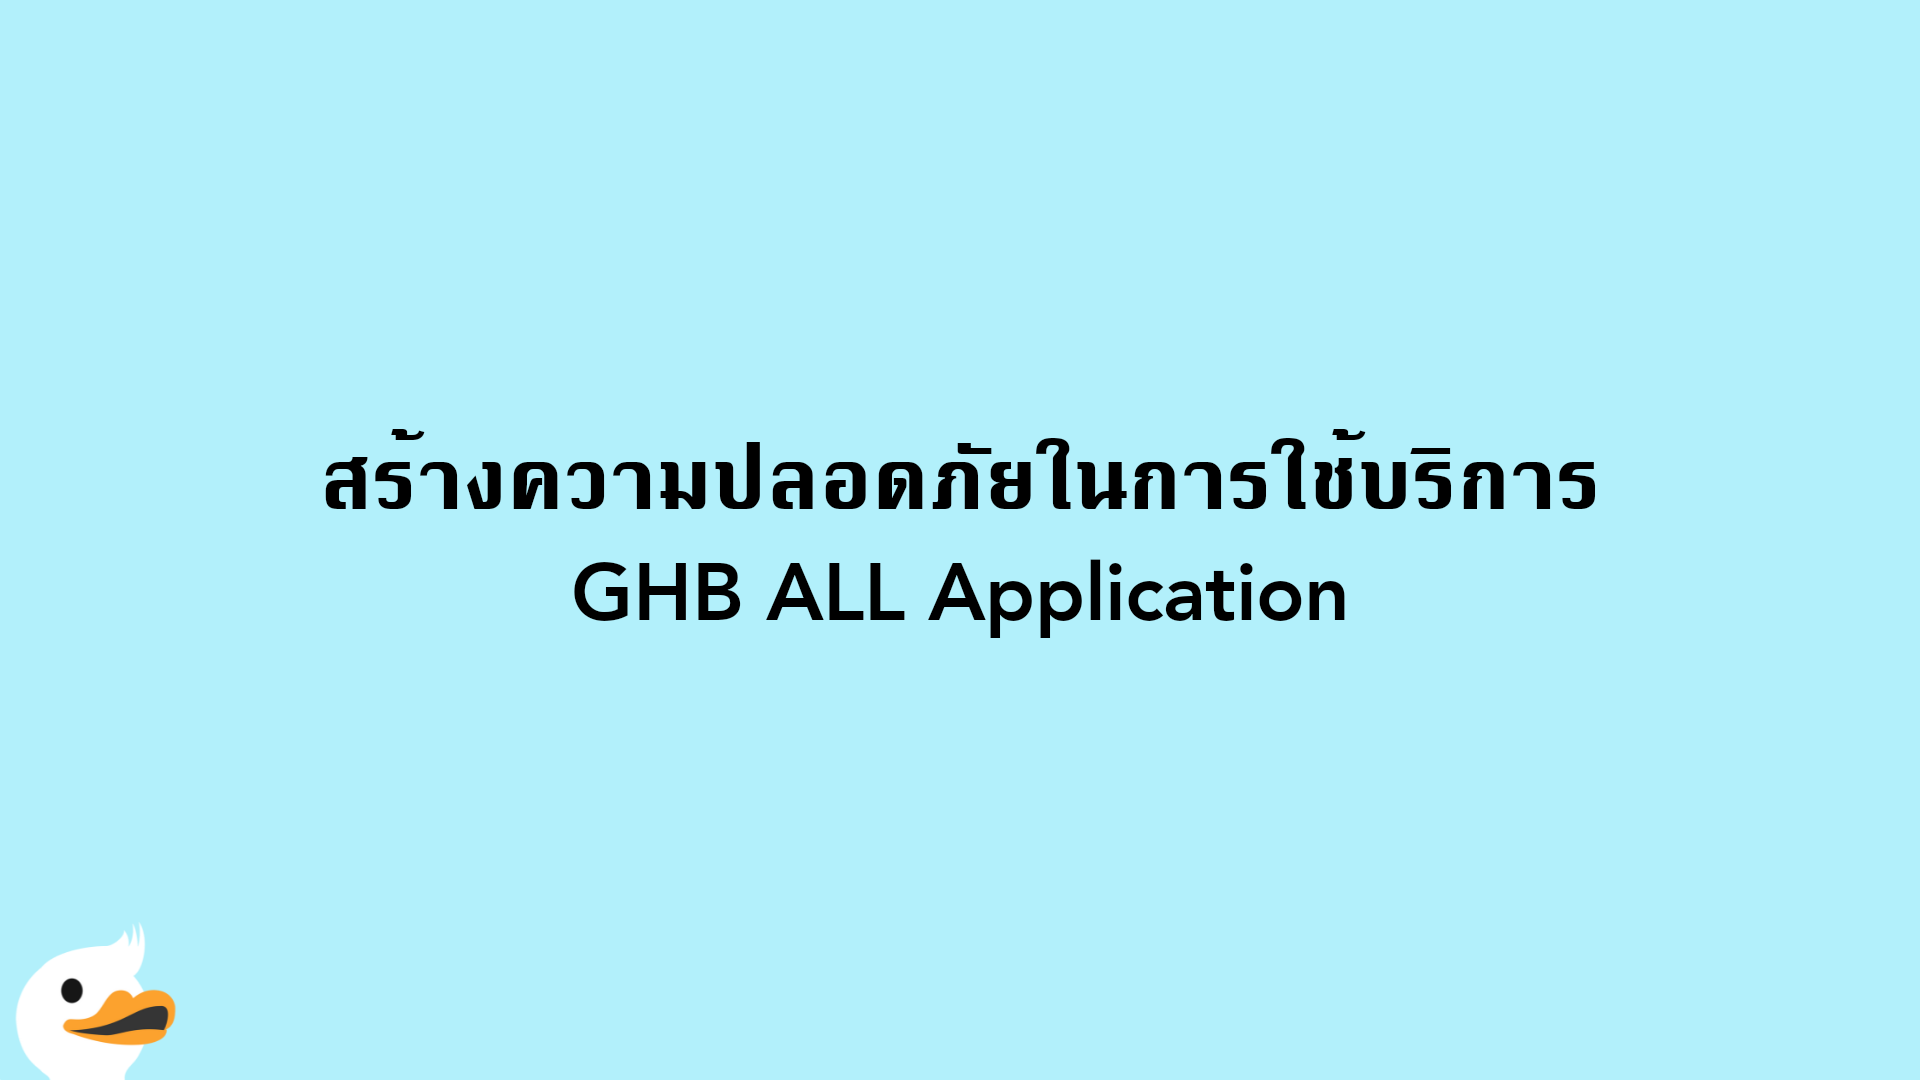 สร้างความปลอดภัยในการใช้บริการ GHB ALL Application